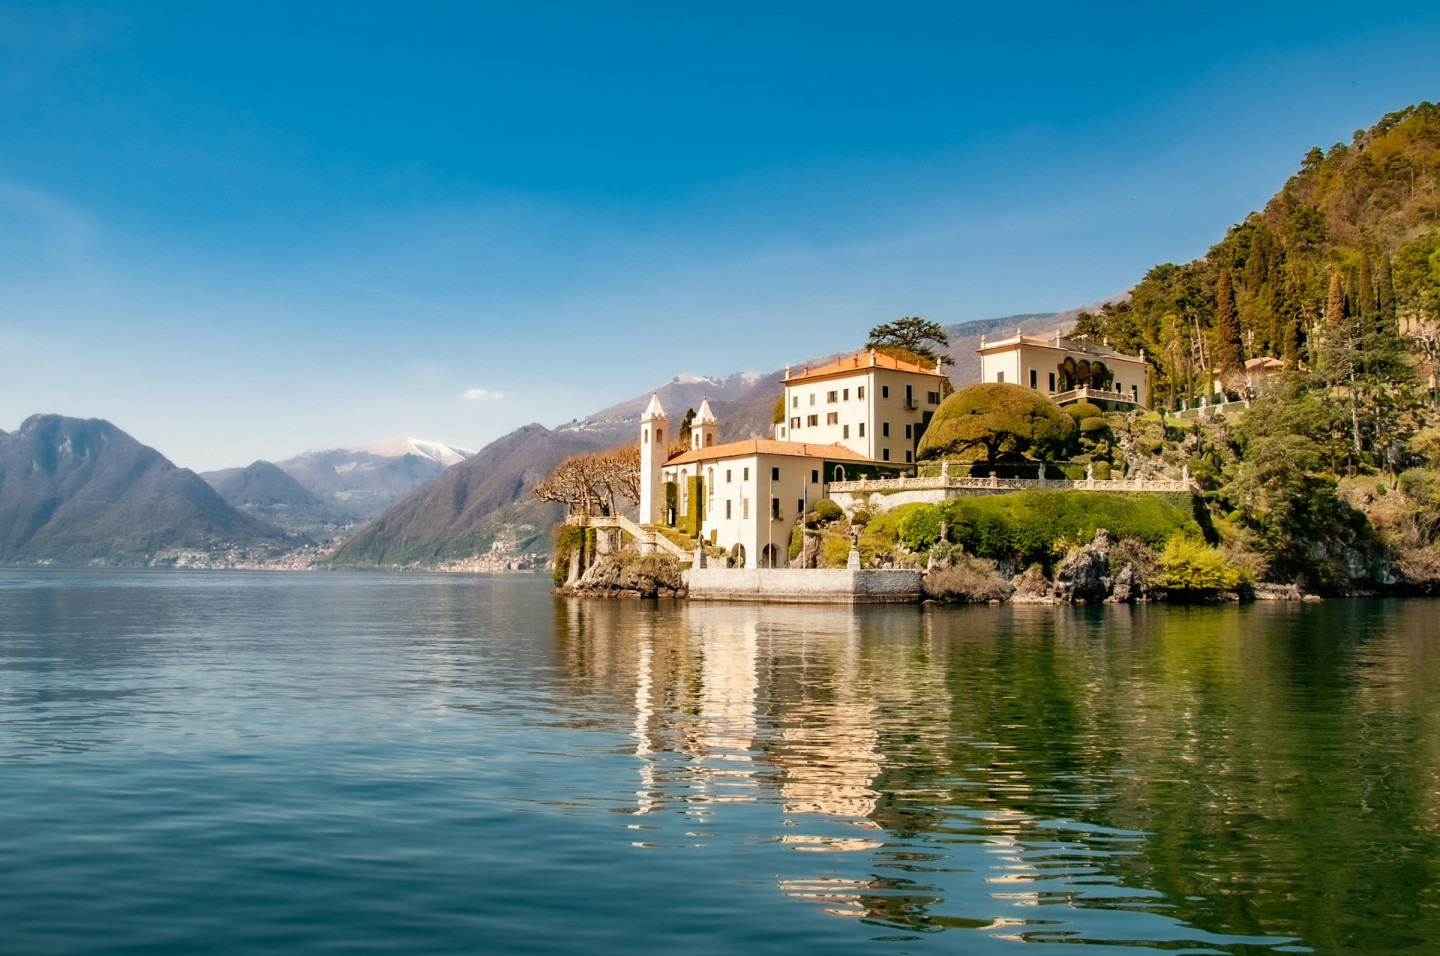 Tremezzina photo taken from Lake Como